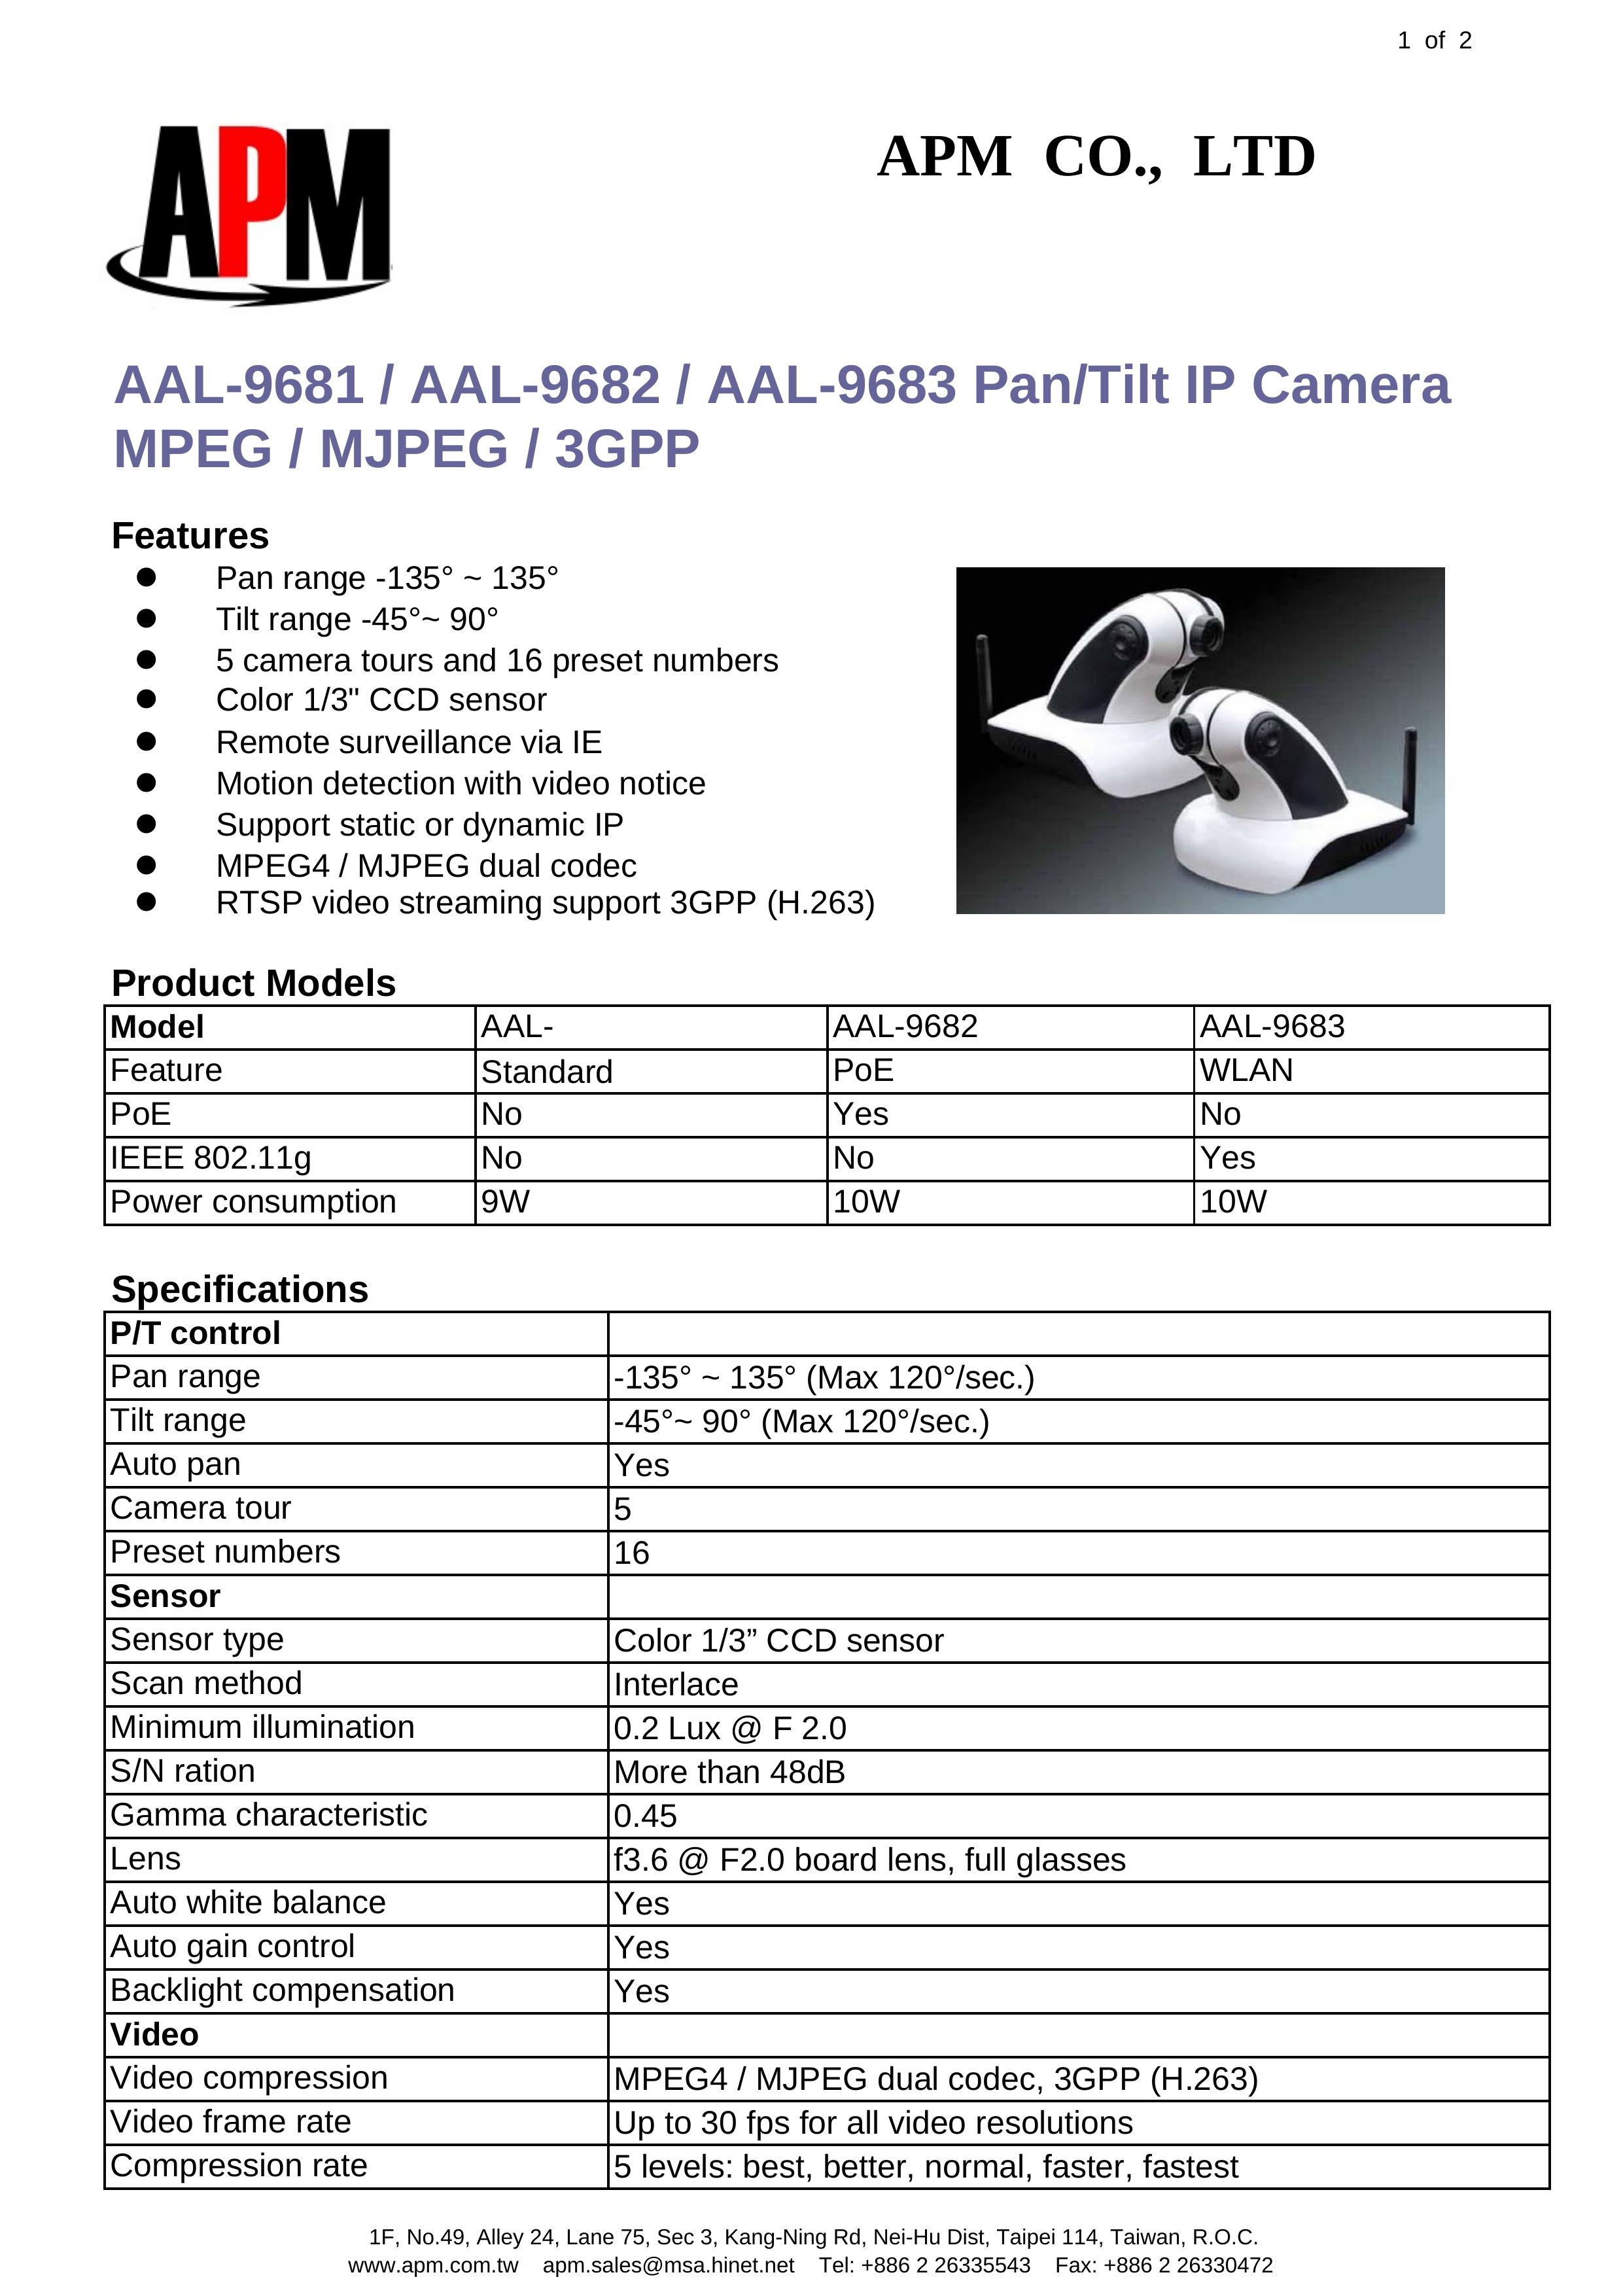 APM AAL-9683 Digital Camera User Manual